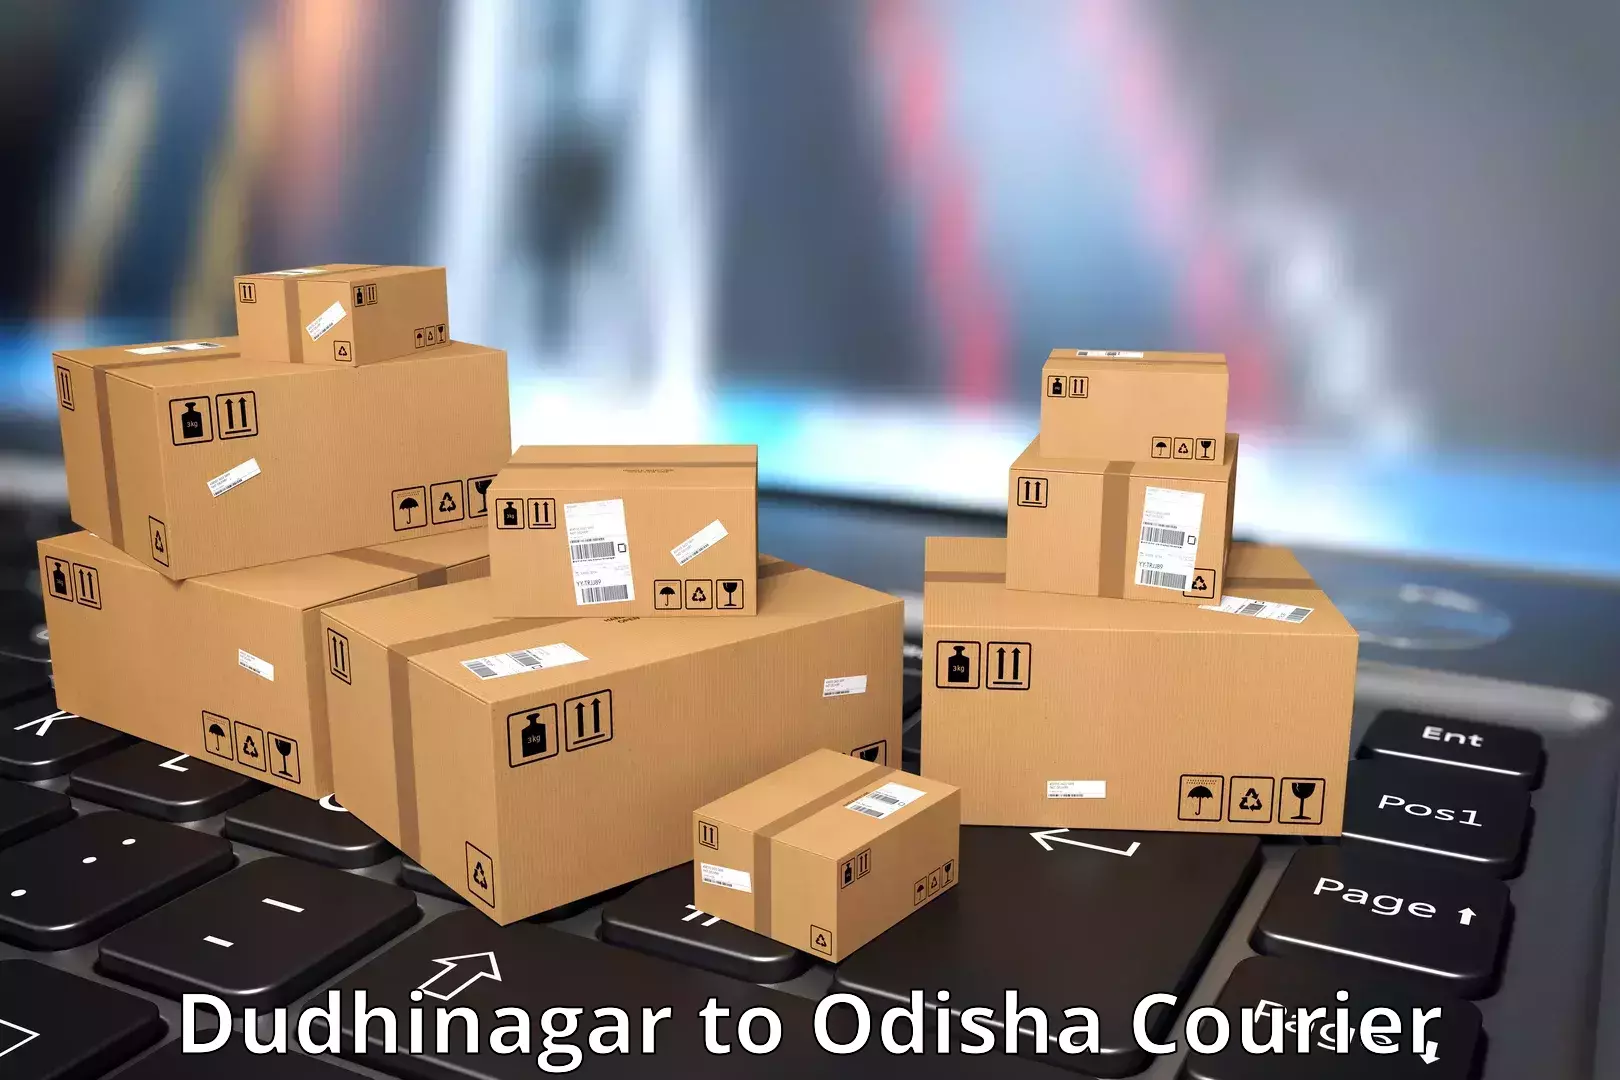 Advanced freight services Dudhinagar to Pottangi